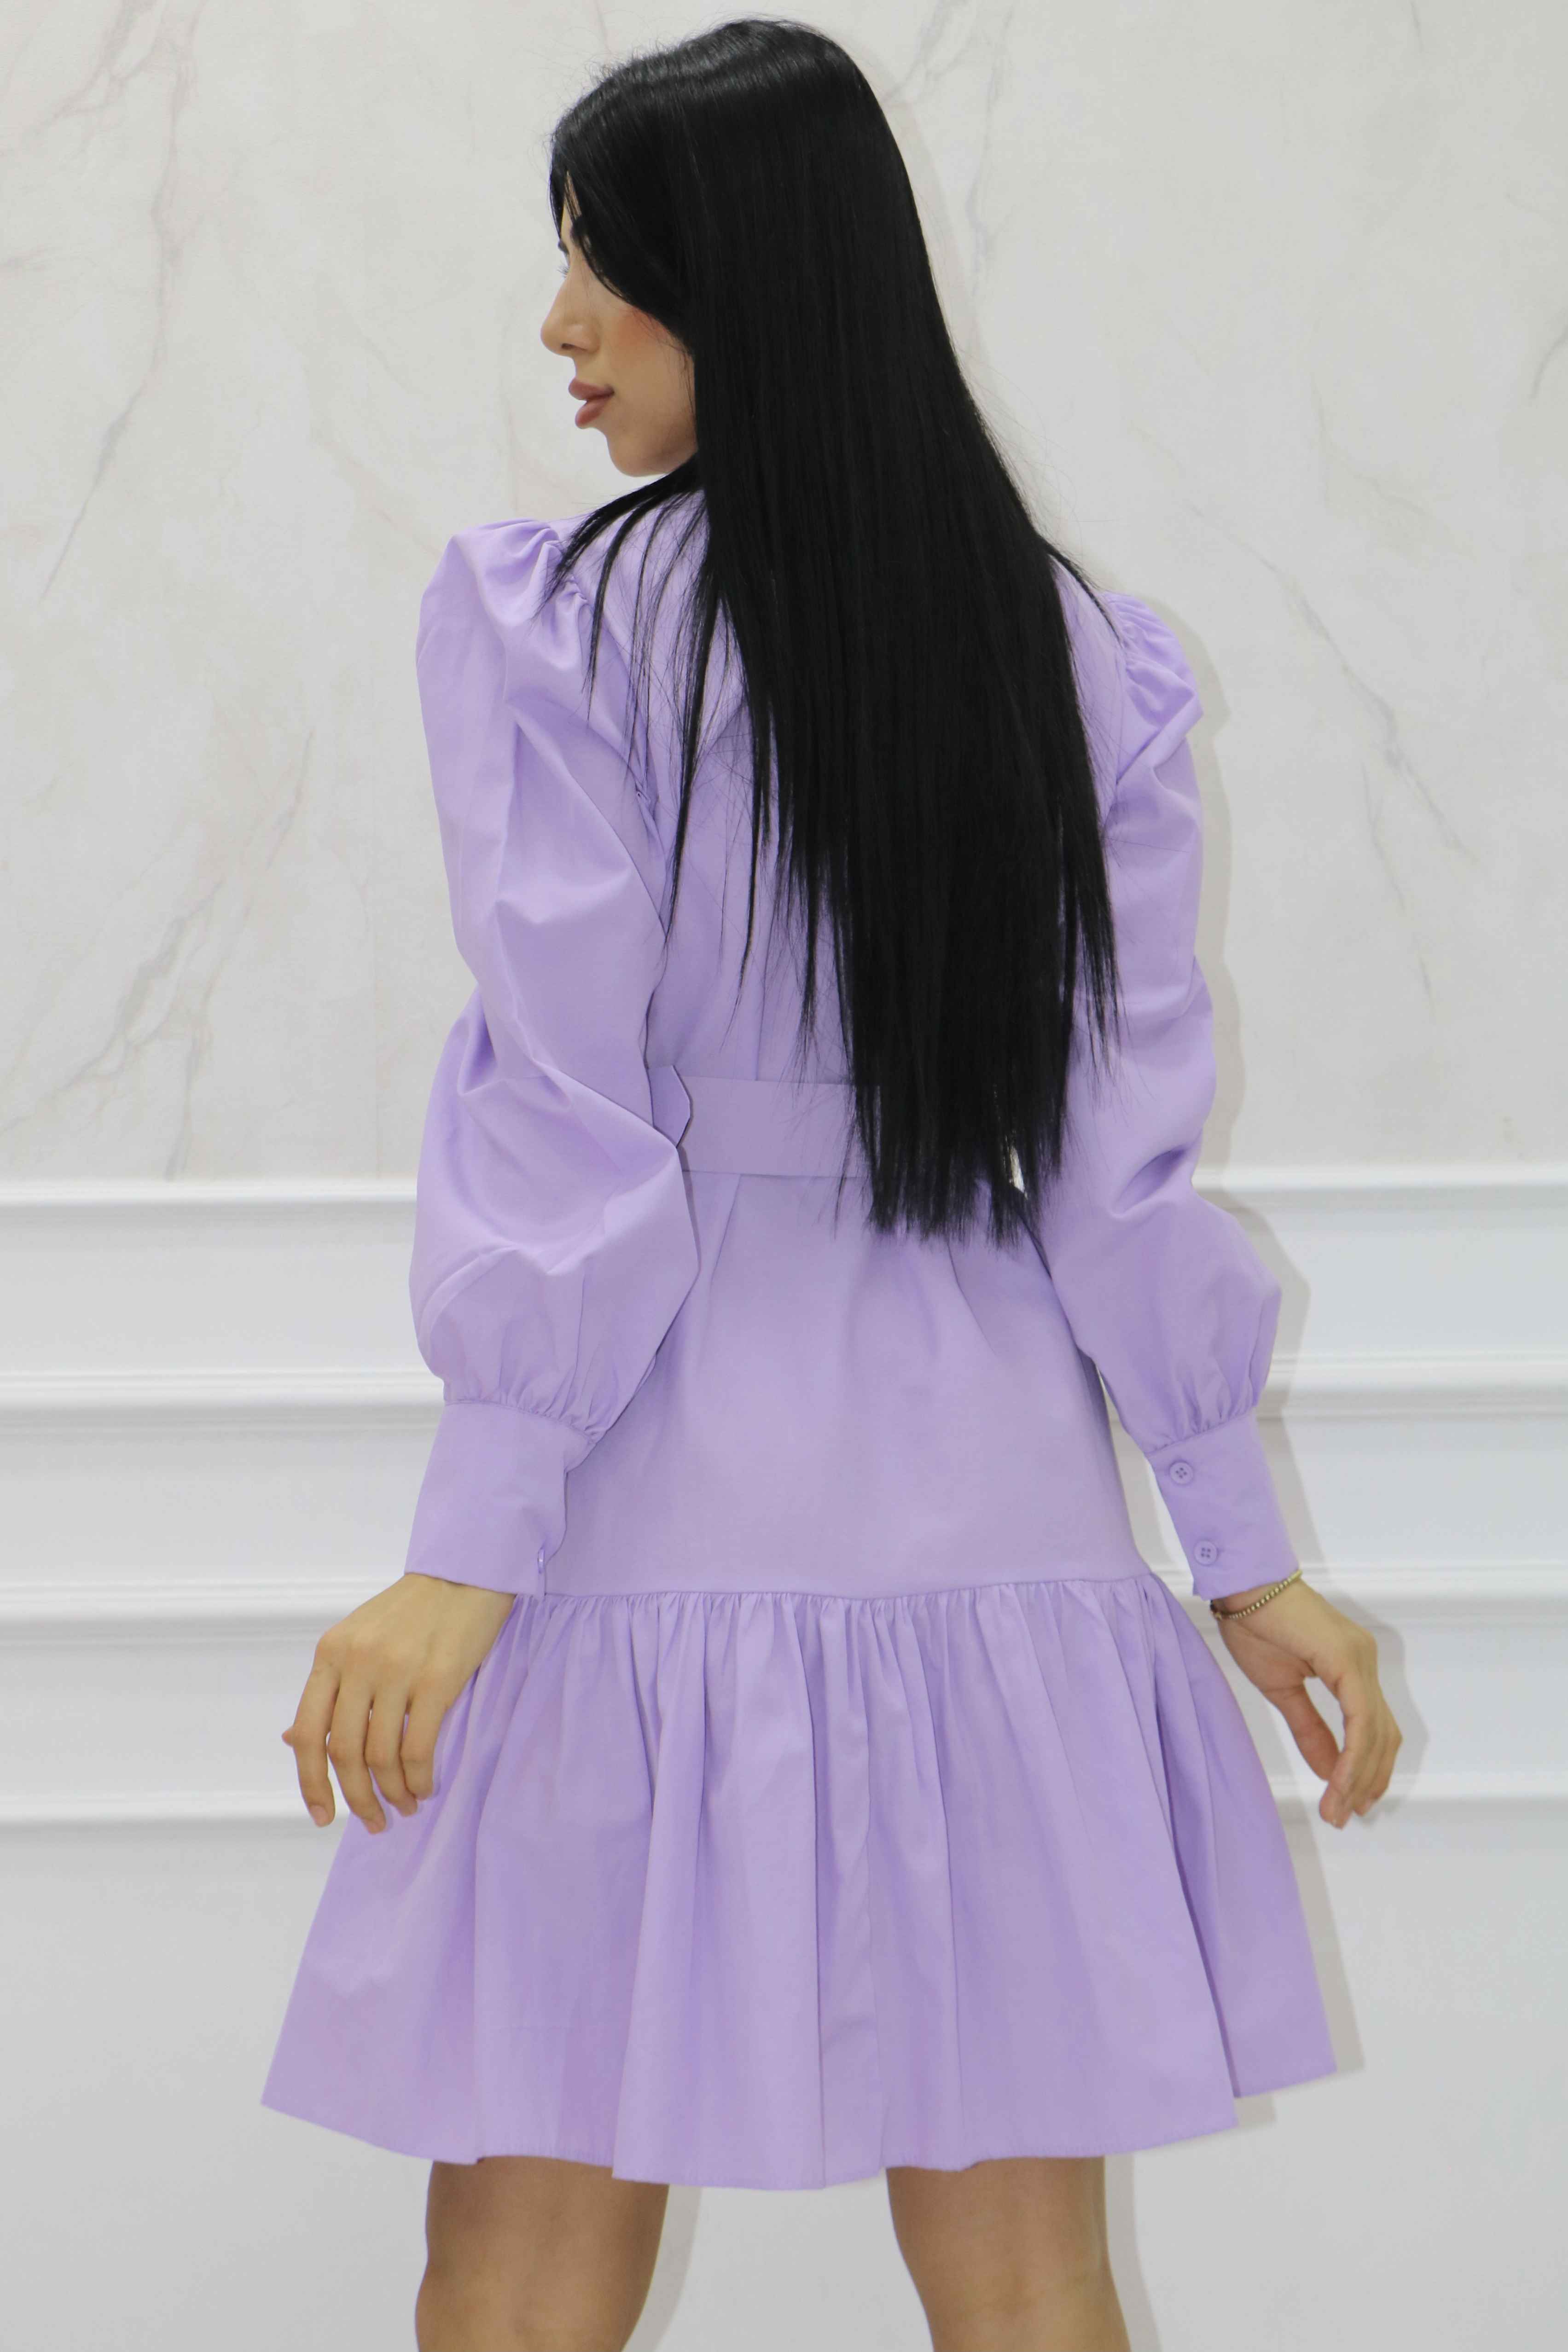 2074 - Terikoton Tasarım Kemerli Günlük Elbise